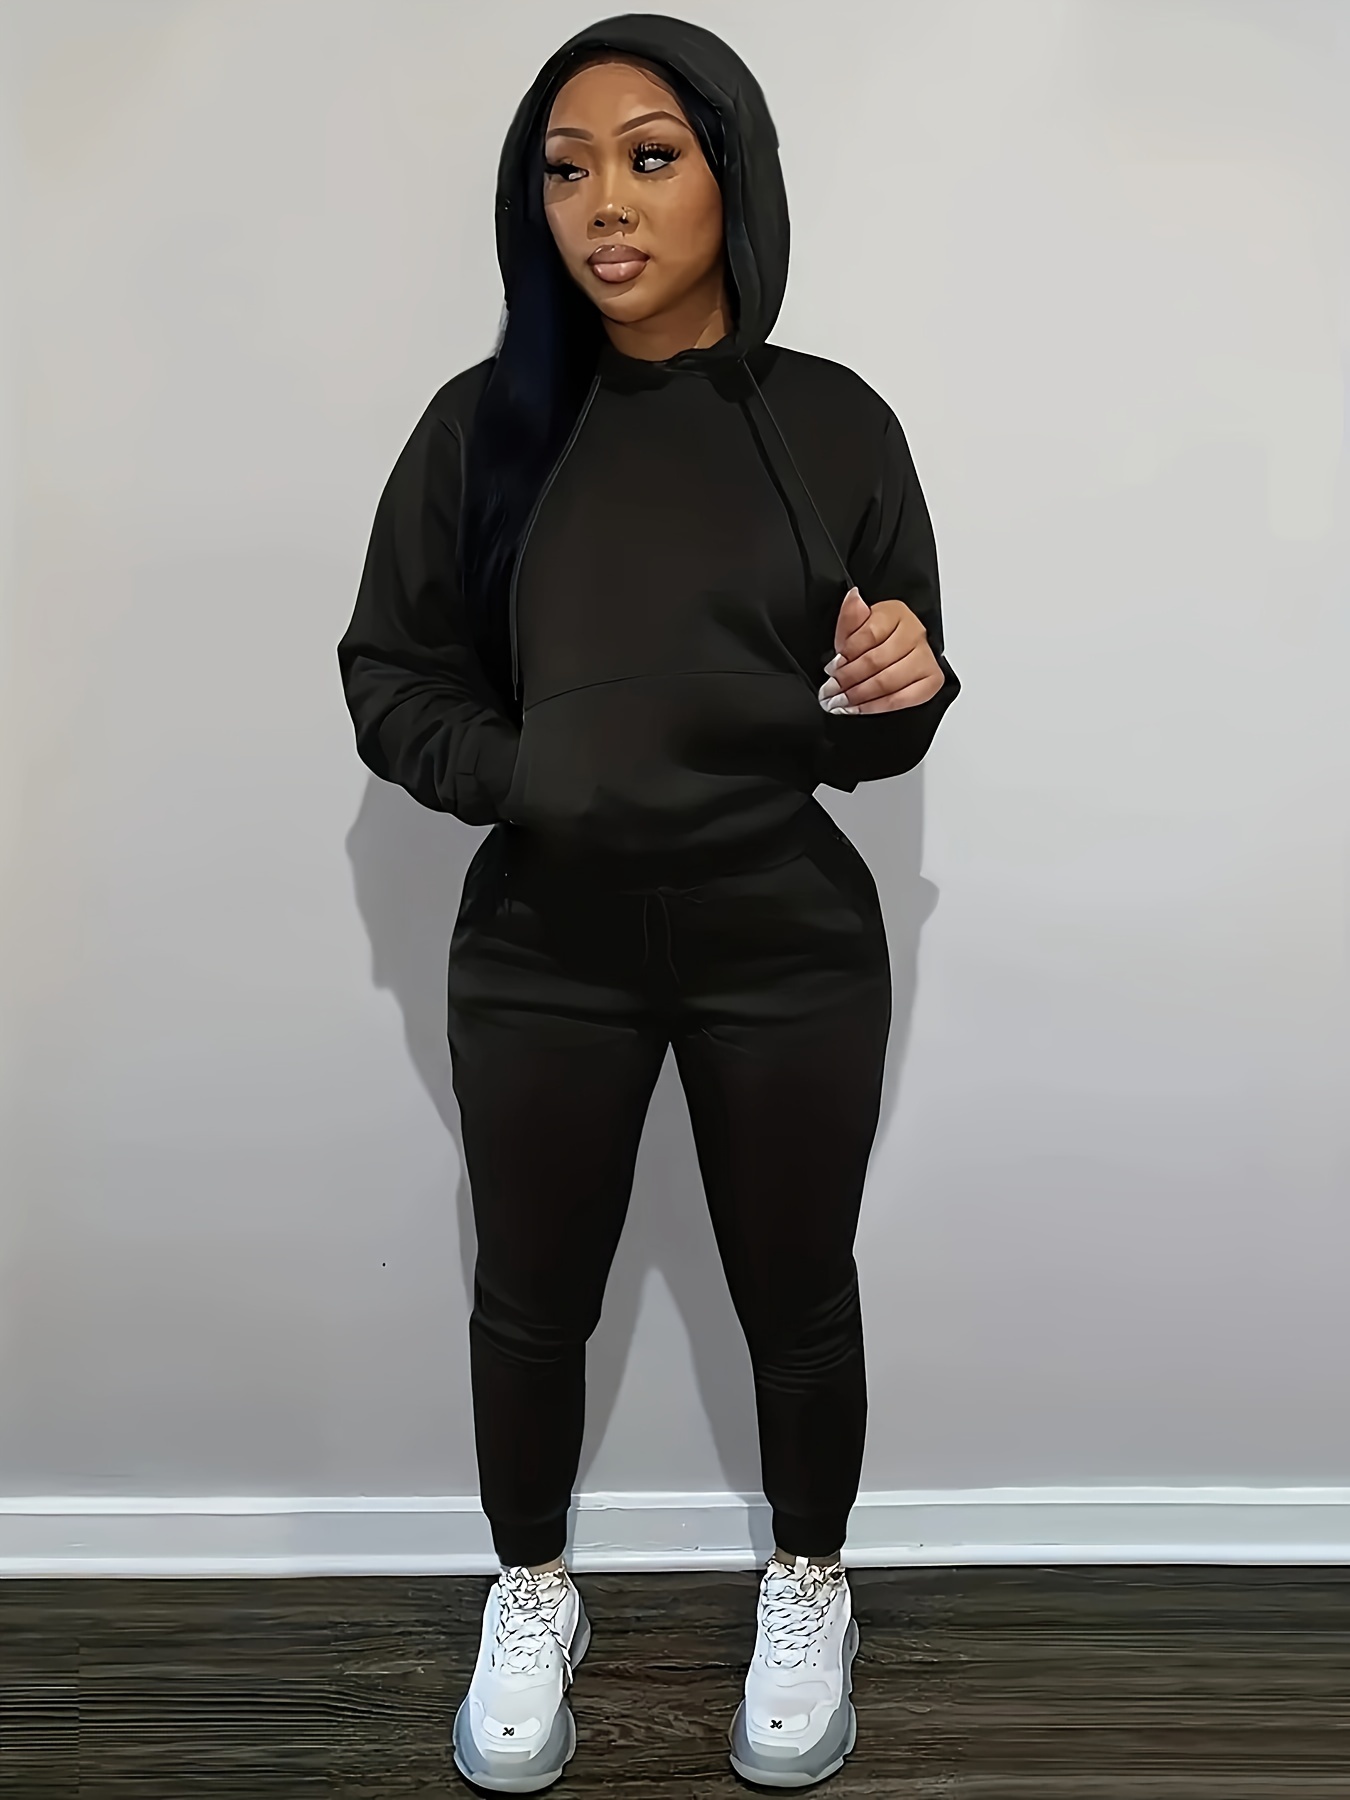 Women's sweatsuit set in black